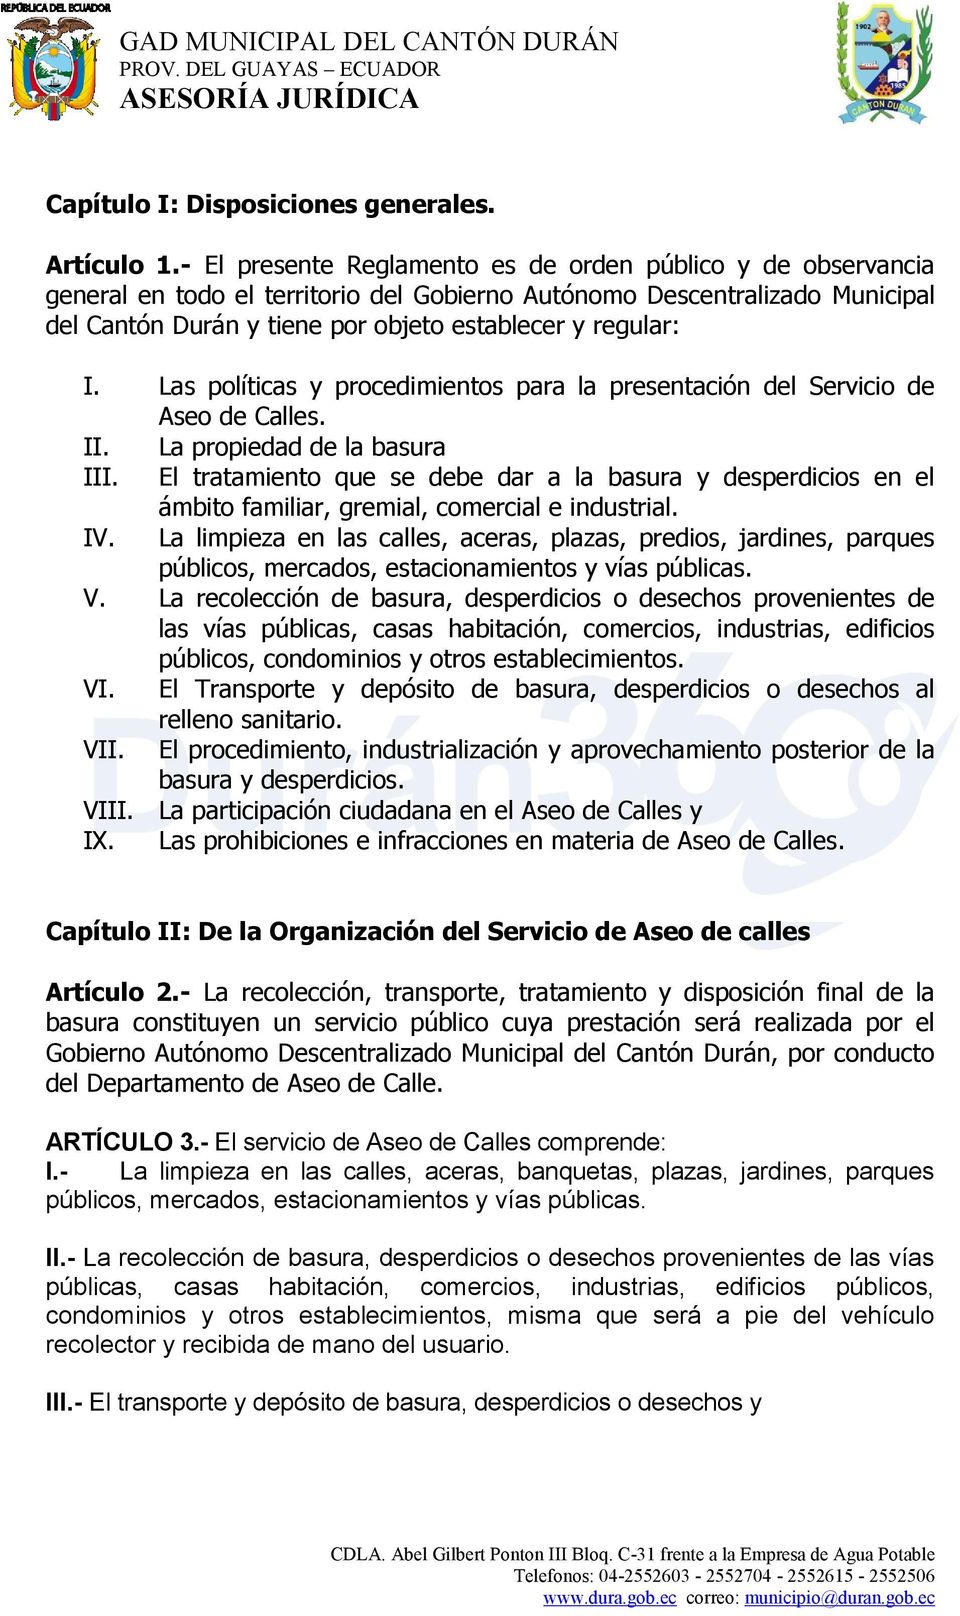 Las políticas y procedimientos para la presentación del Servicio de Aseo de Calles. II. La propiedad de la basura III.